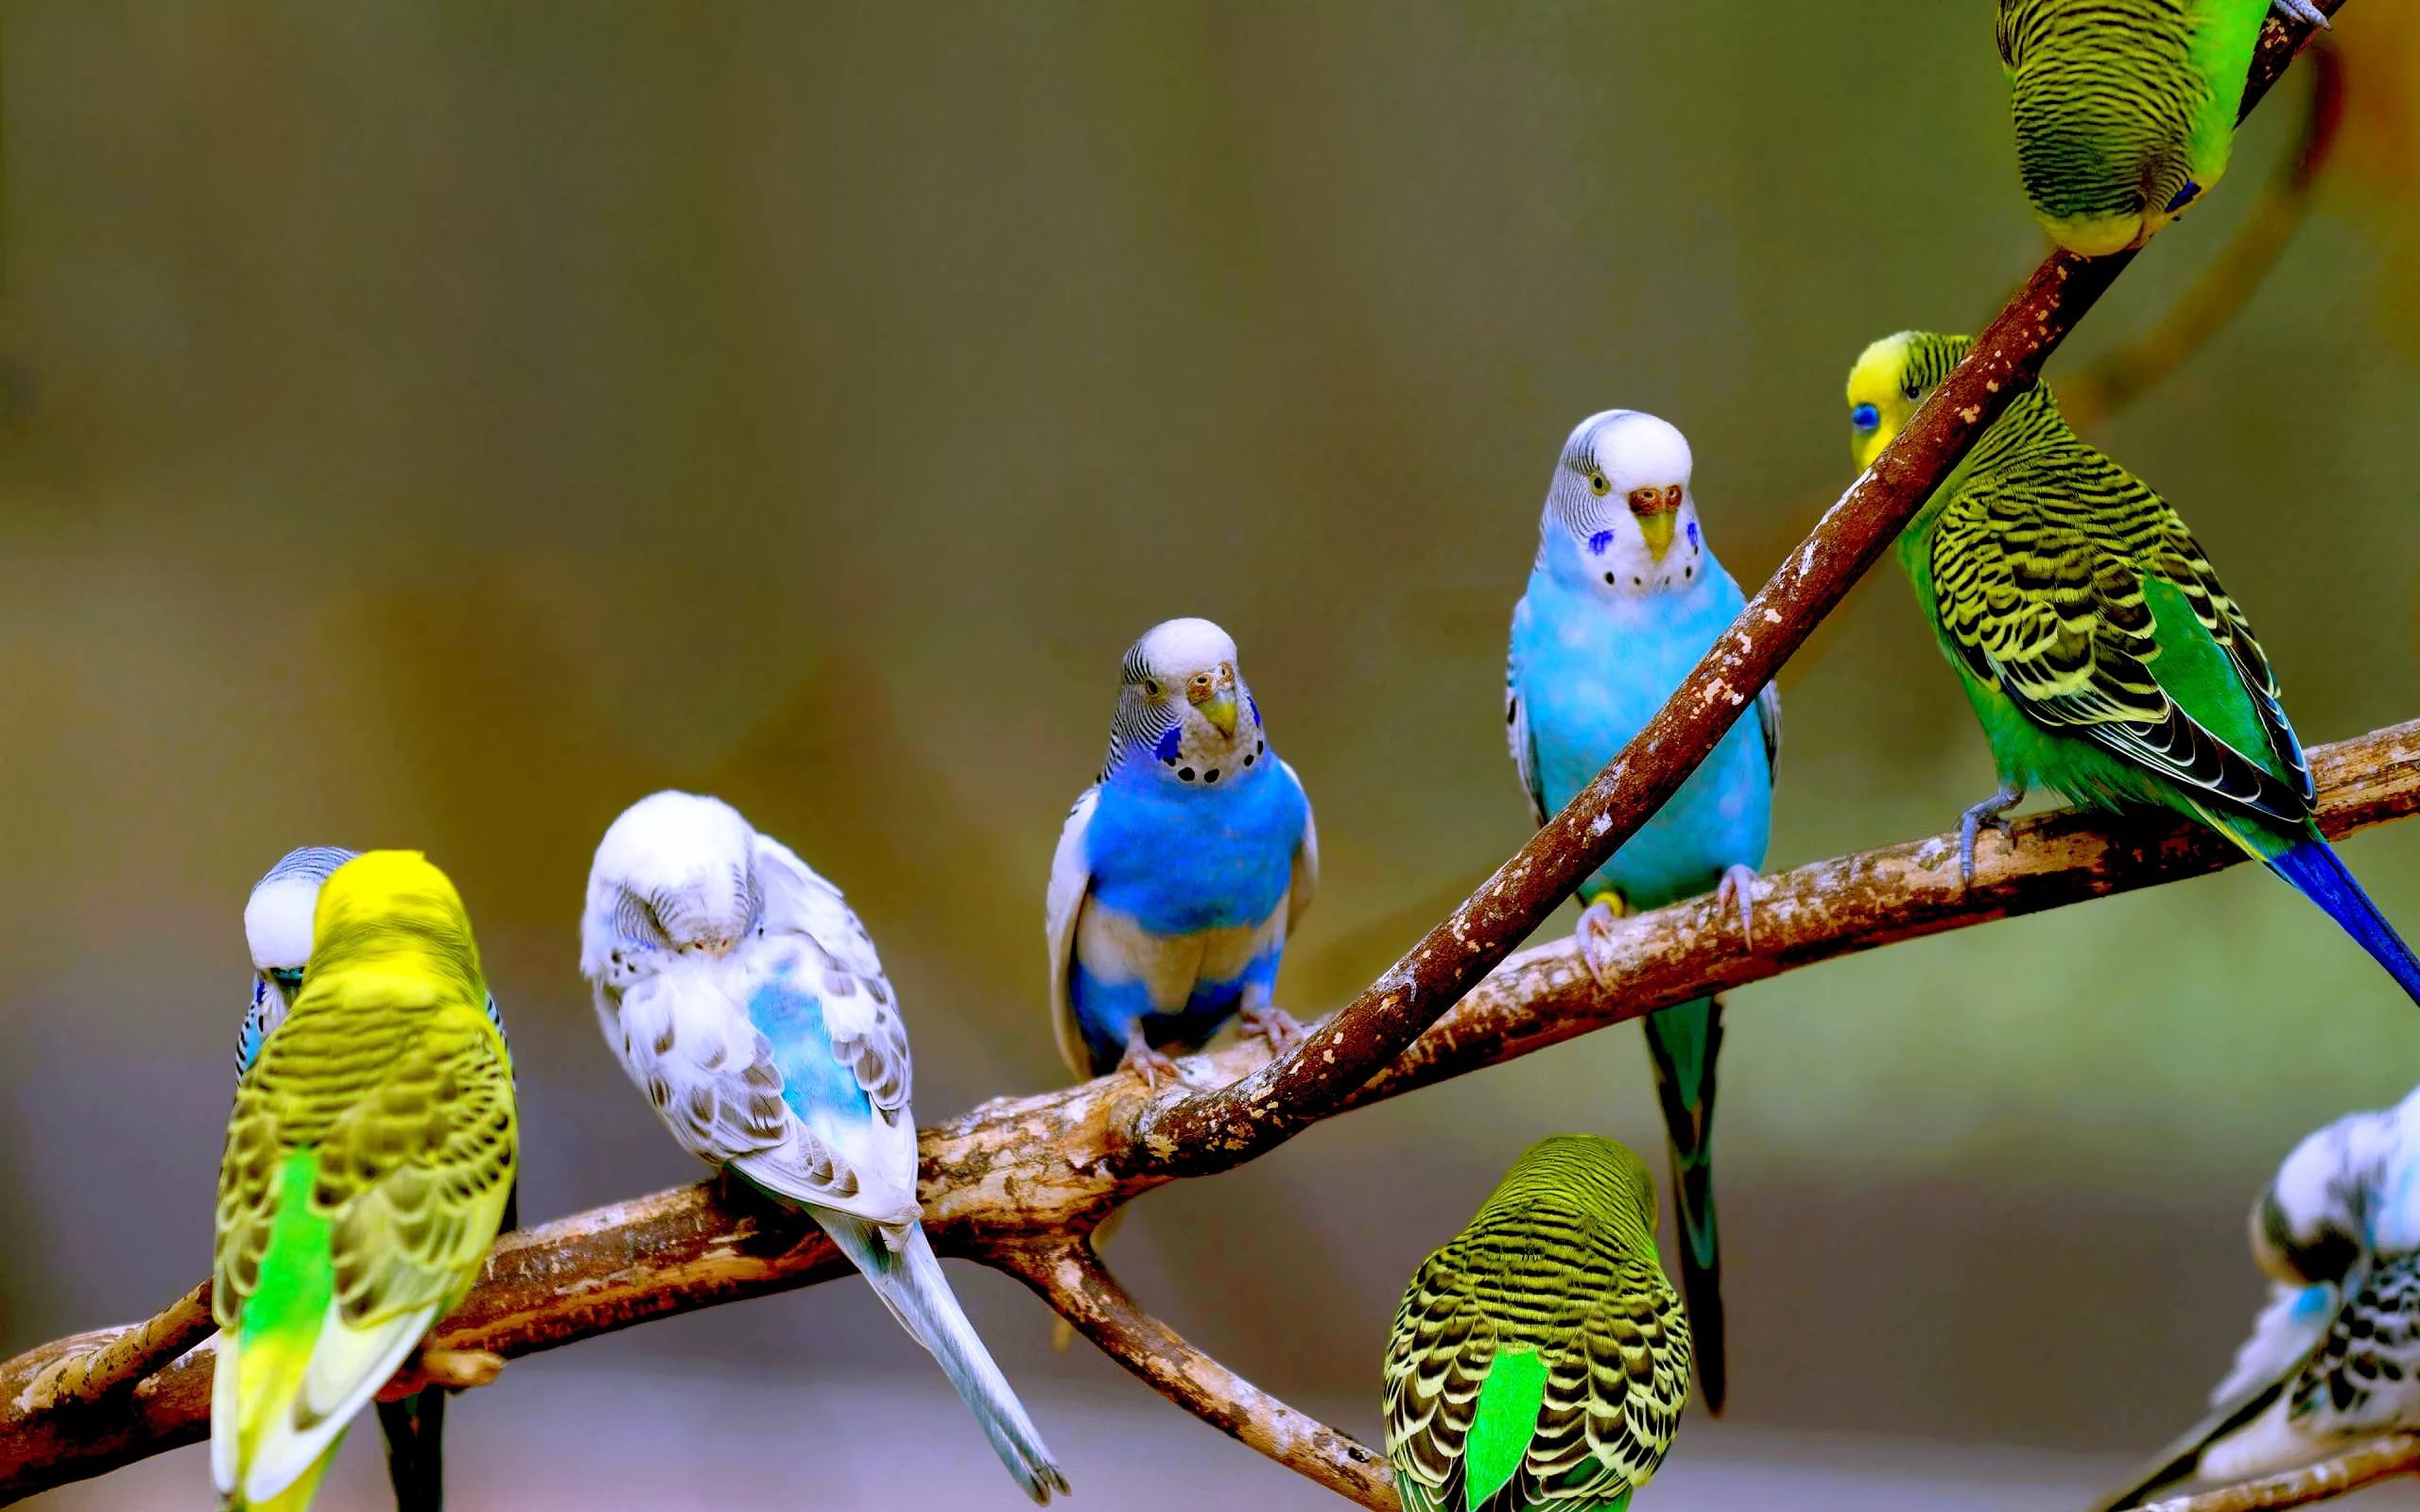 Con Vẹt Đuôi Dài Là Một Loài Chim Nhỏ Màu Xanh Lá Cây Và Màu Vàng Hình ảnh  Sẵn có - Tải xuống Hình ảnh Ngay bây giờ - iStock